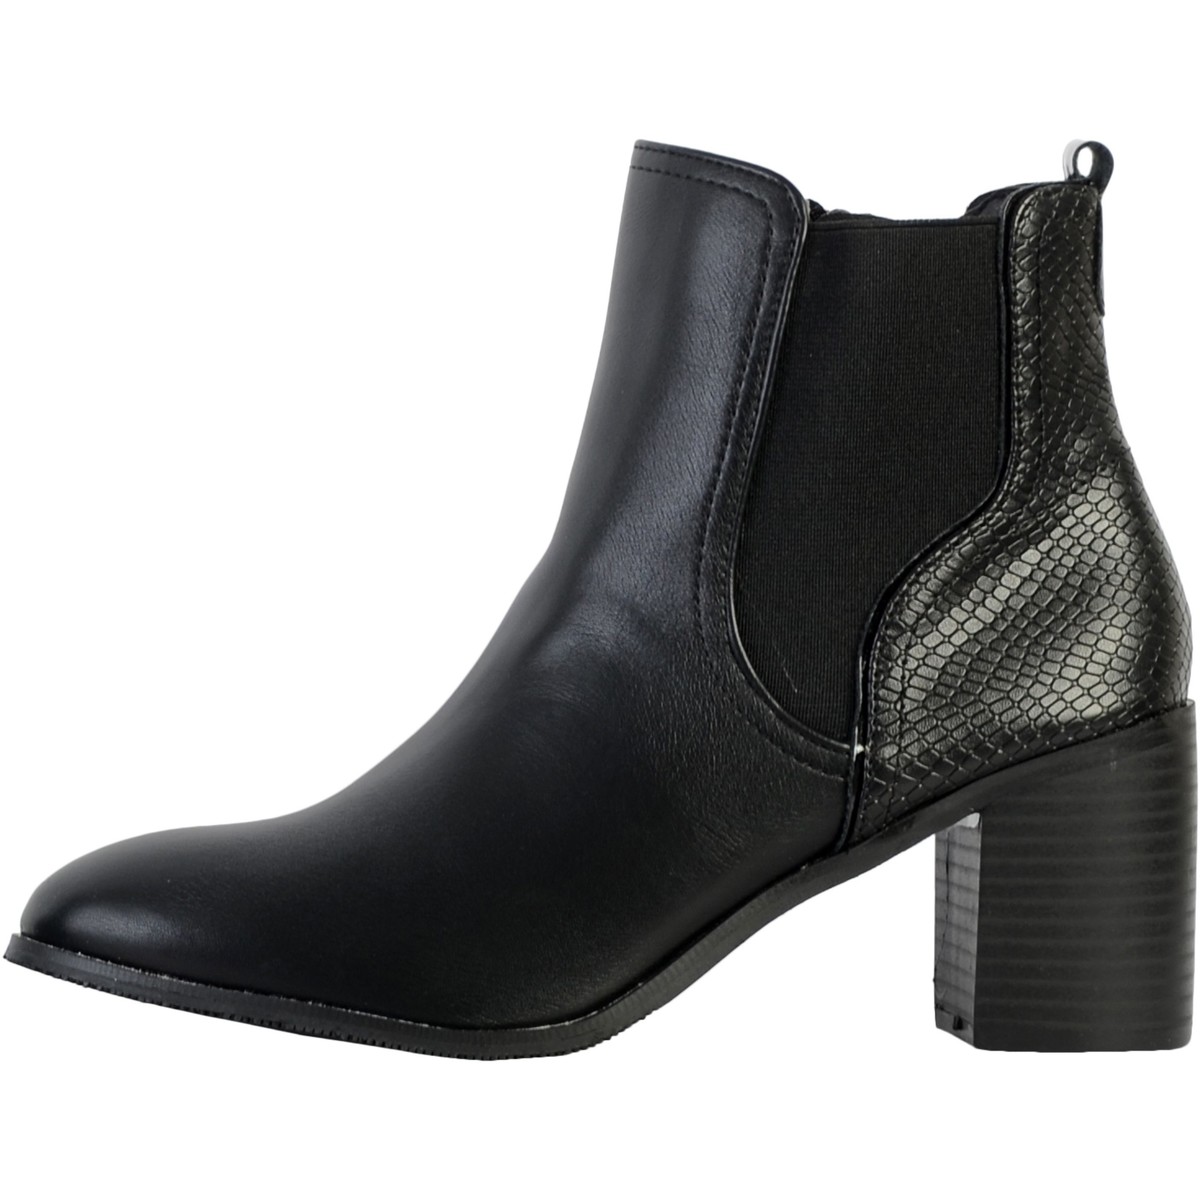 Chaussures Femme Turela Ankle Boots Bottines à Talon Cuir Noir